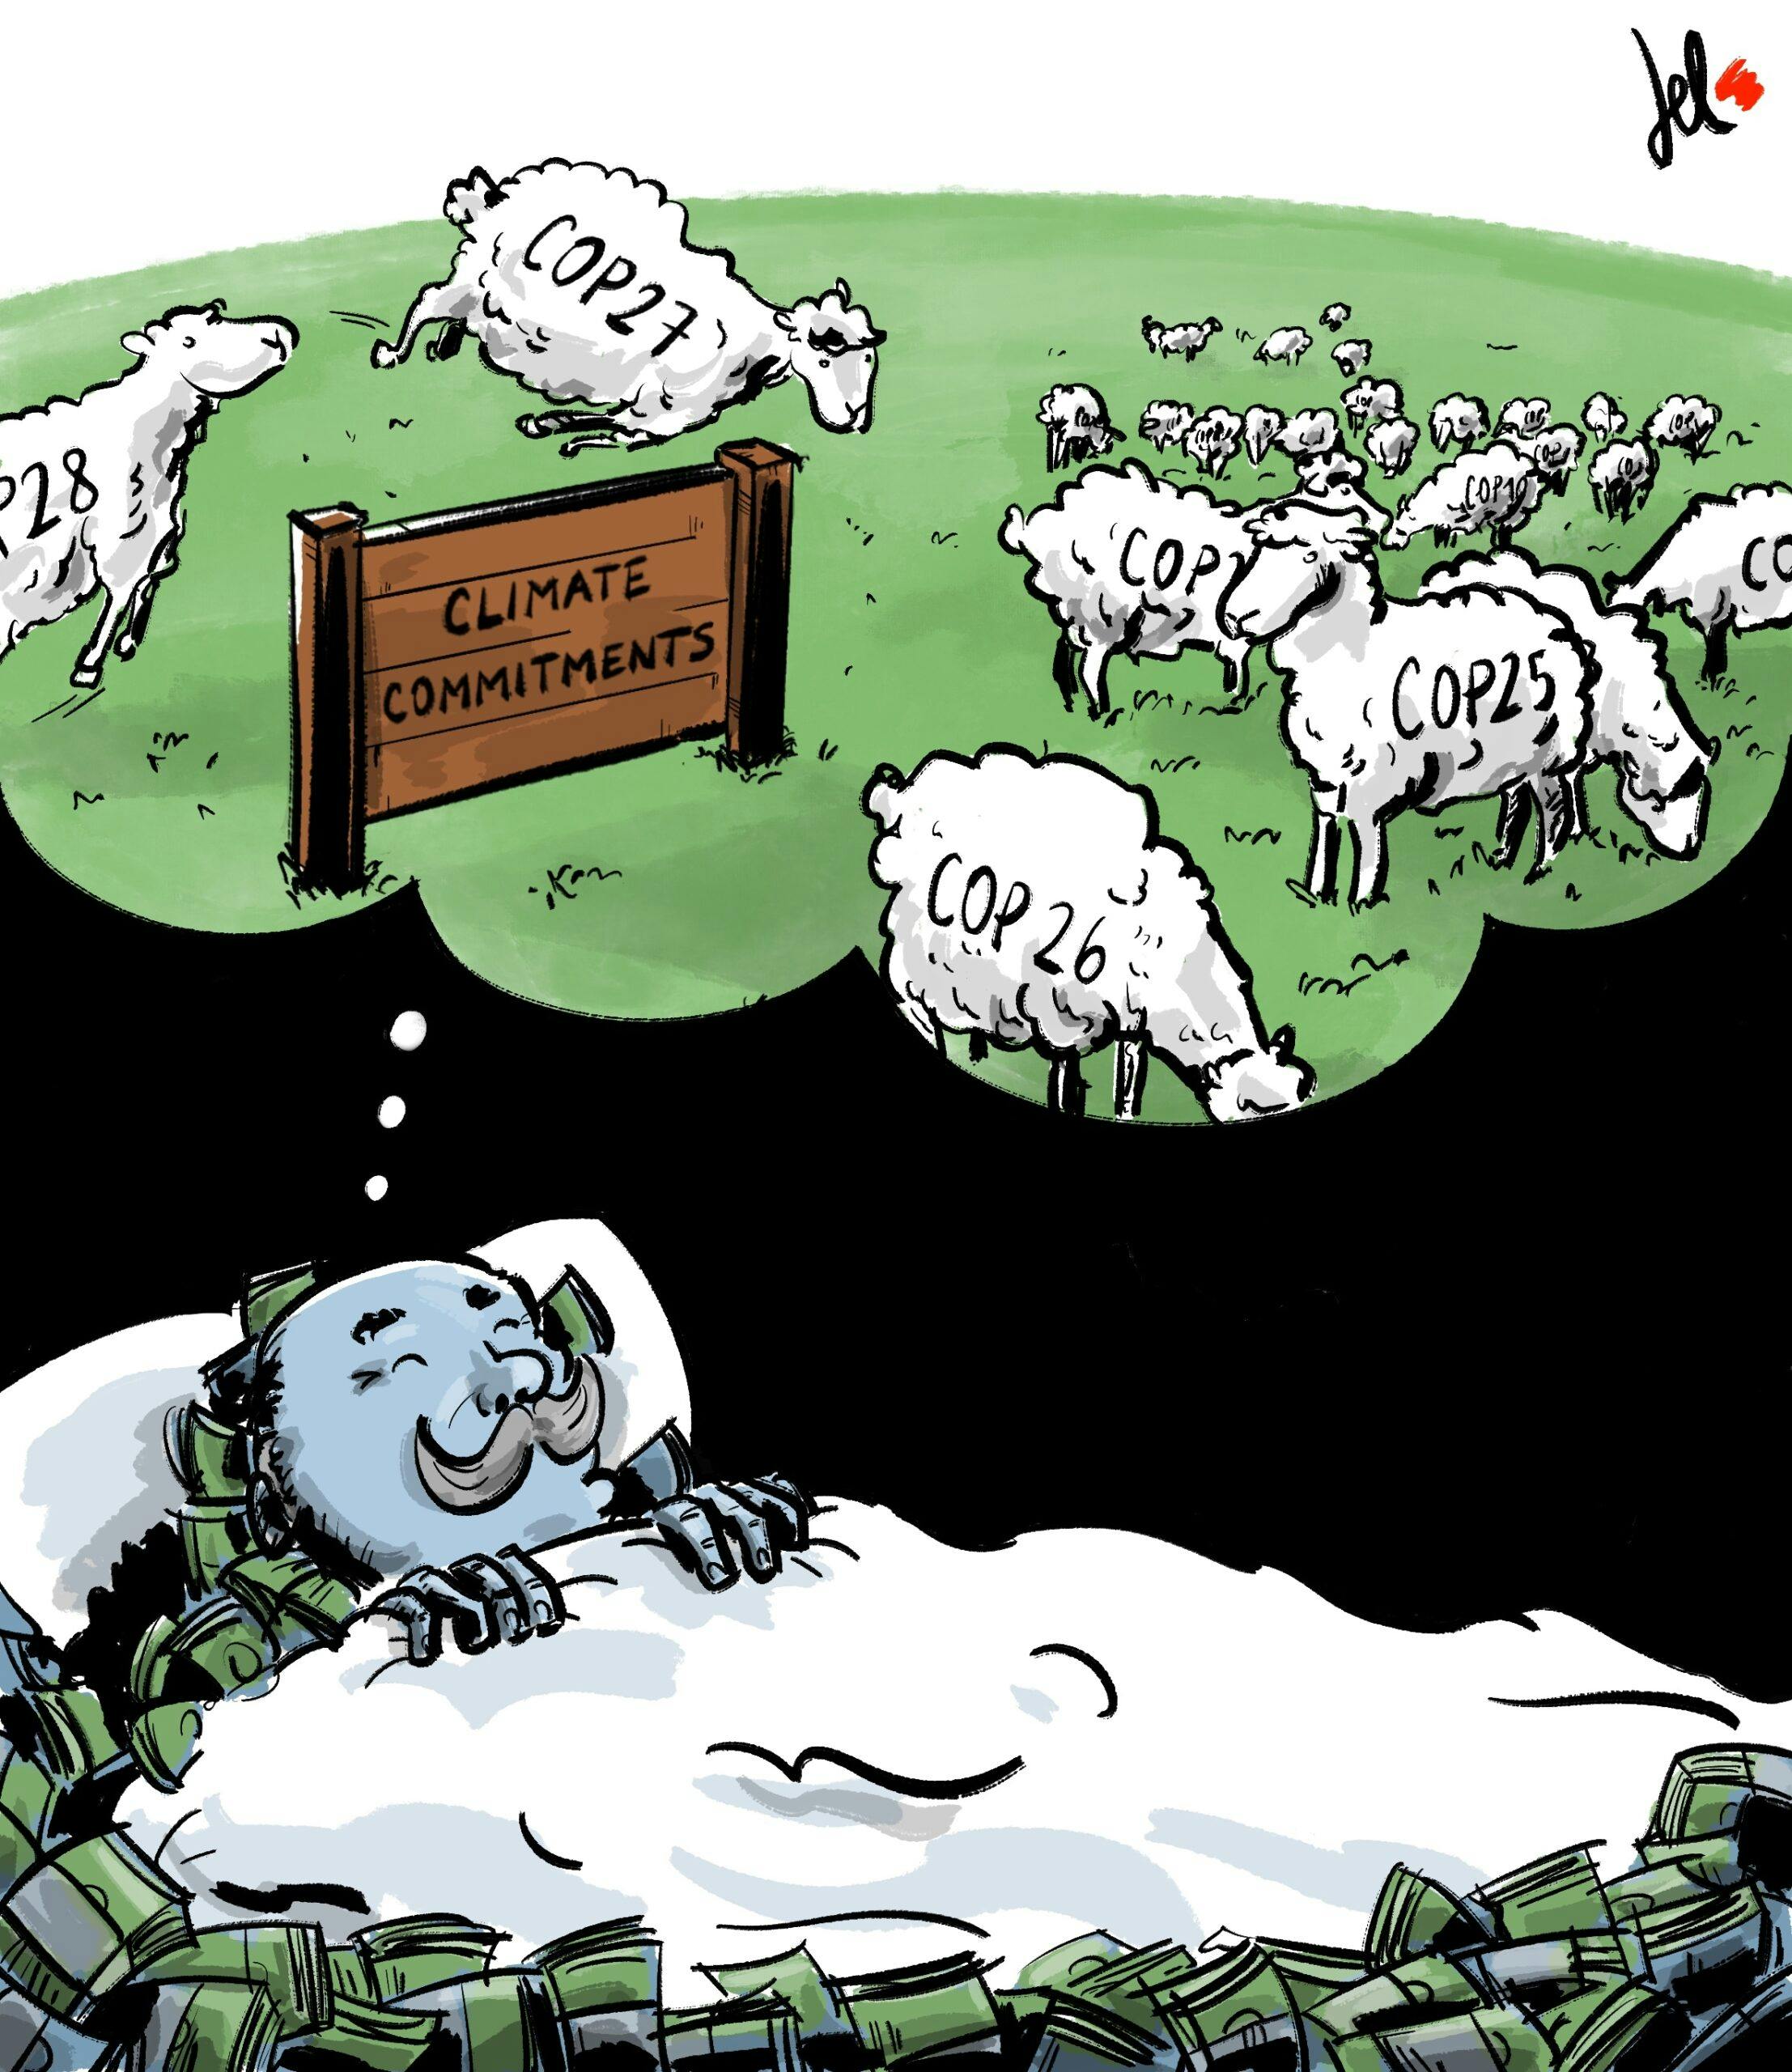 مردی در خواب دارد نمایی از چندین گوسفند که رویشان نام کاپهای قبلی اقلیمی نوشته شده و دارند می چرند و روی چوبی نوشته شده تعهدات اقلیمی را می بیند